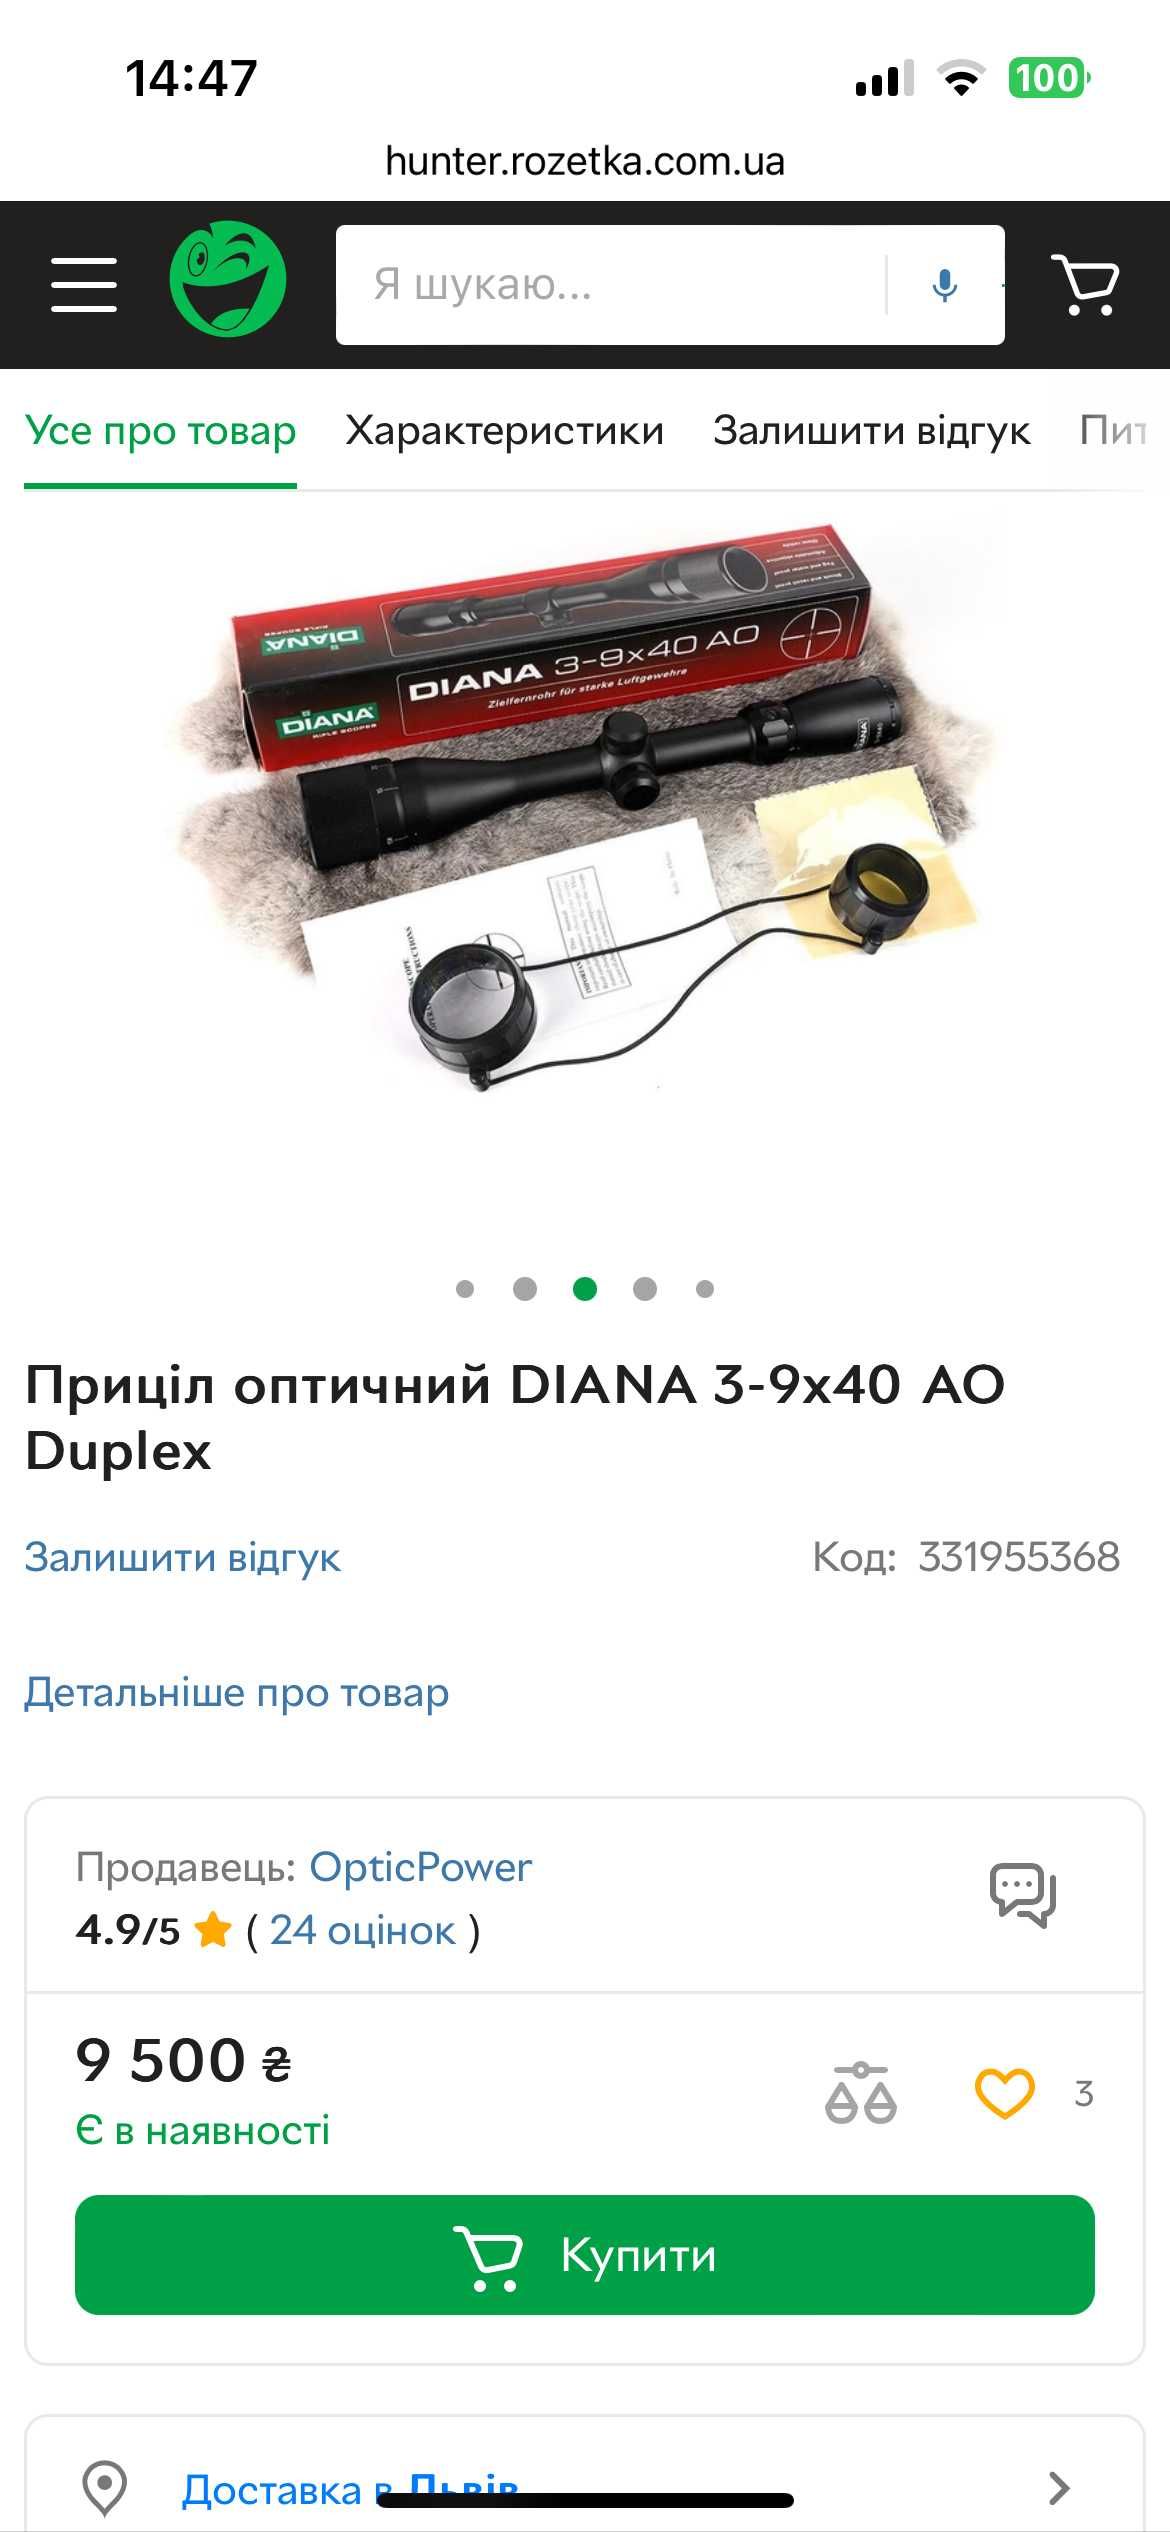 Прицел оптический DIANA 3-9x40 AO Duplex